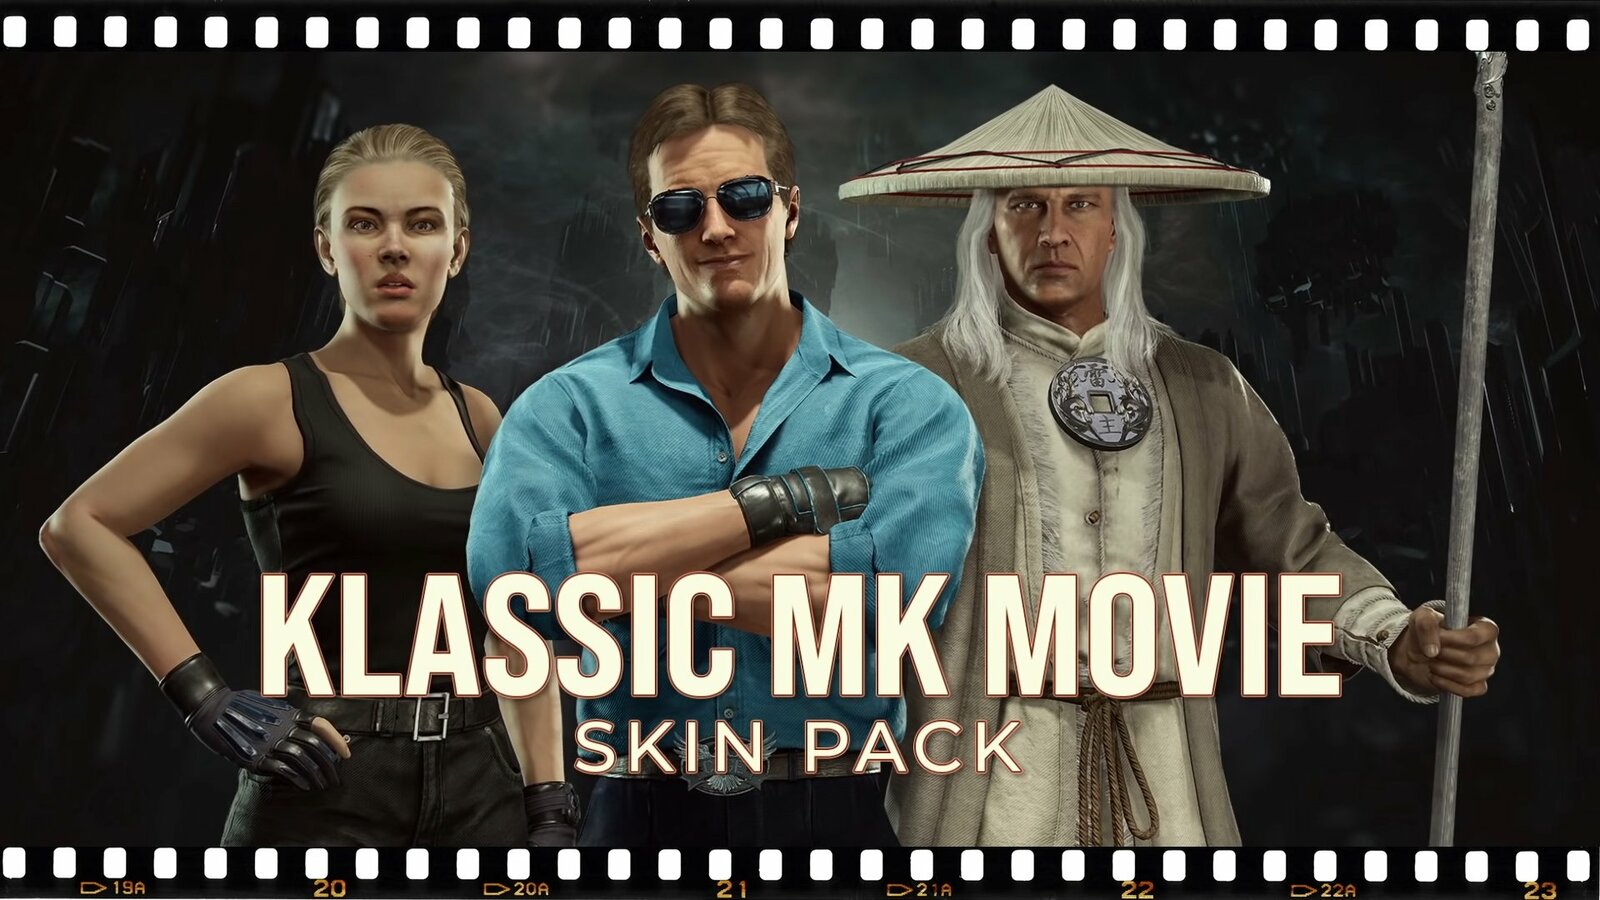 Mortal Kombat 11: Klassic MK Movie Skin Pack